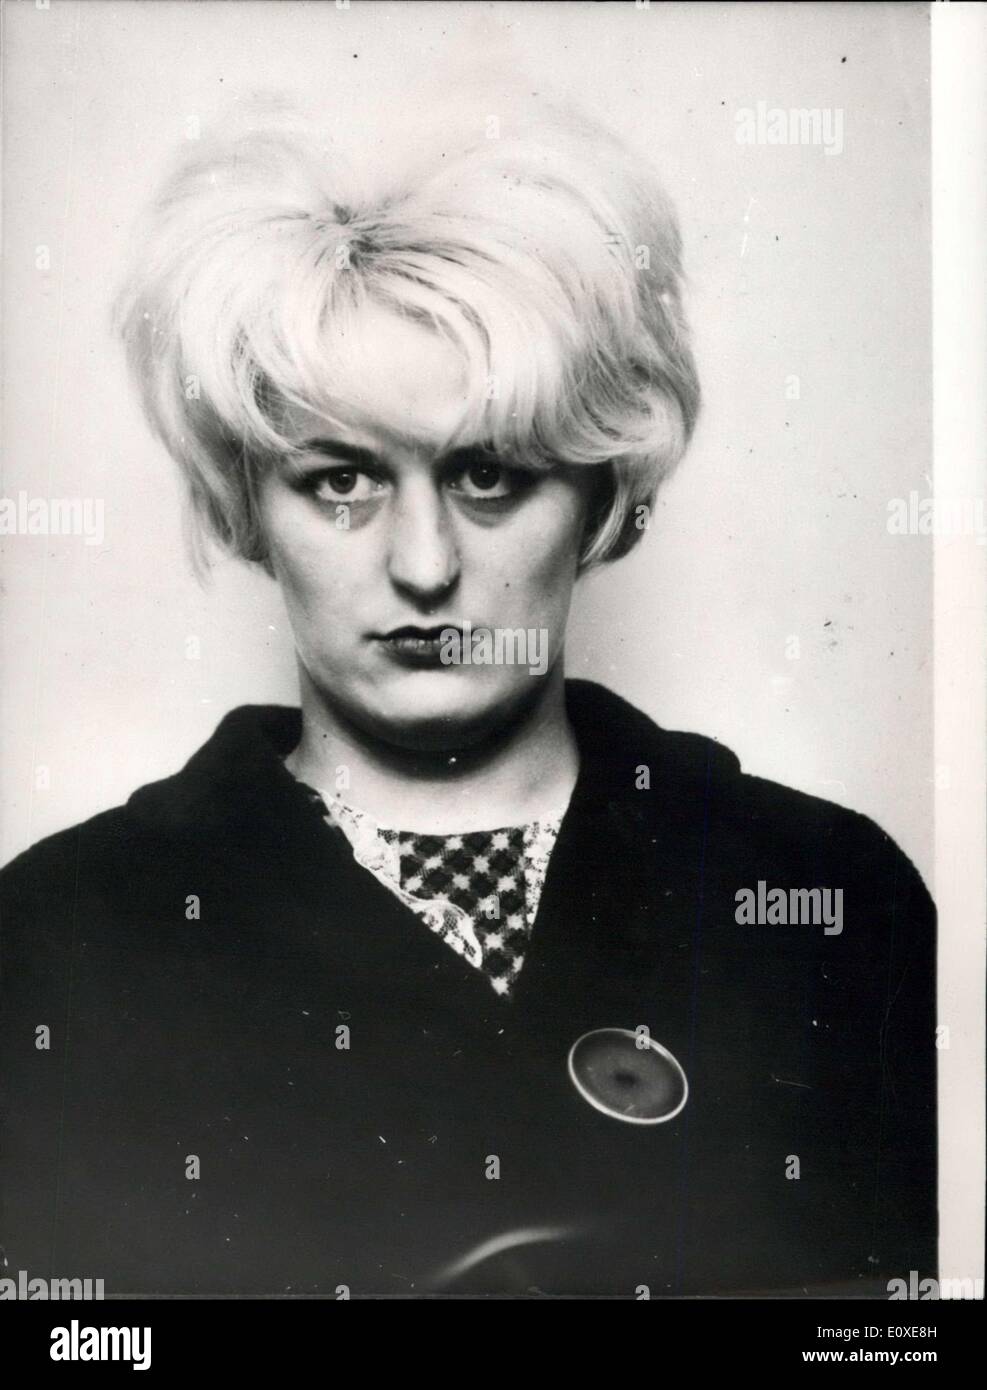 Mayo 06, 1966 - Moros juicio por asesinato.: Ian Brady y Hindley culpables. La foto muestra Myra Hindley. Foto de stock